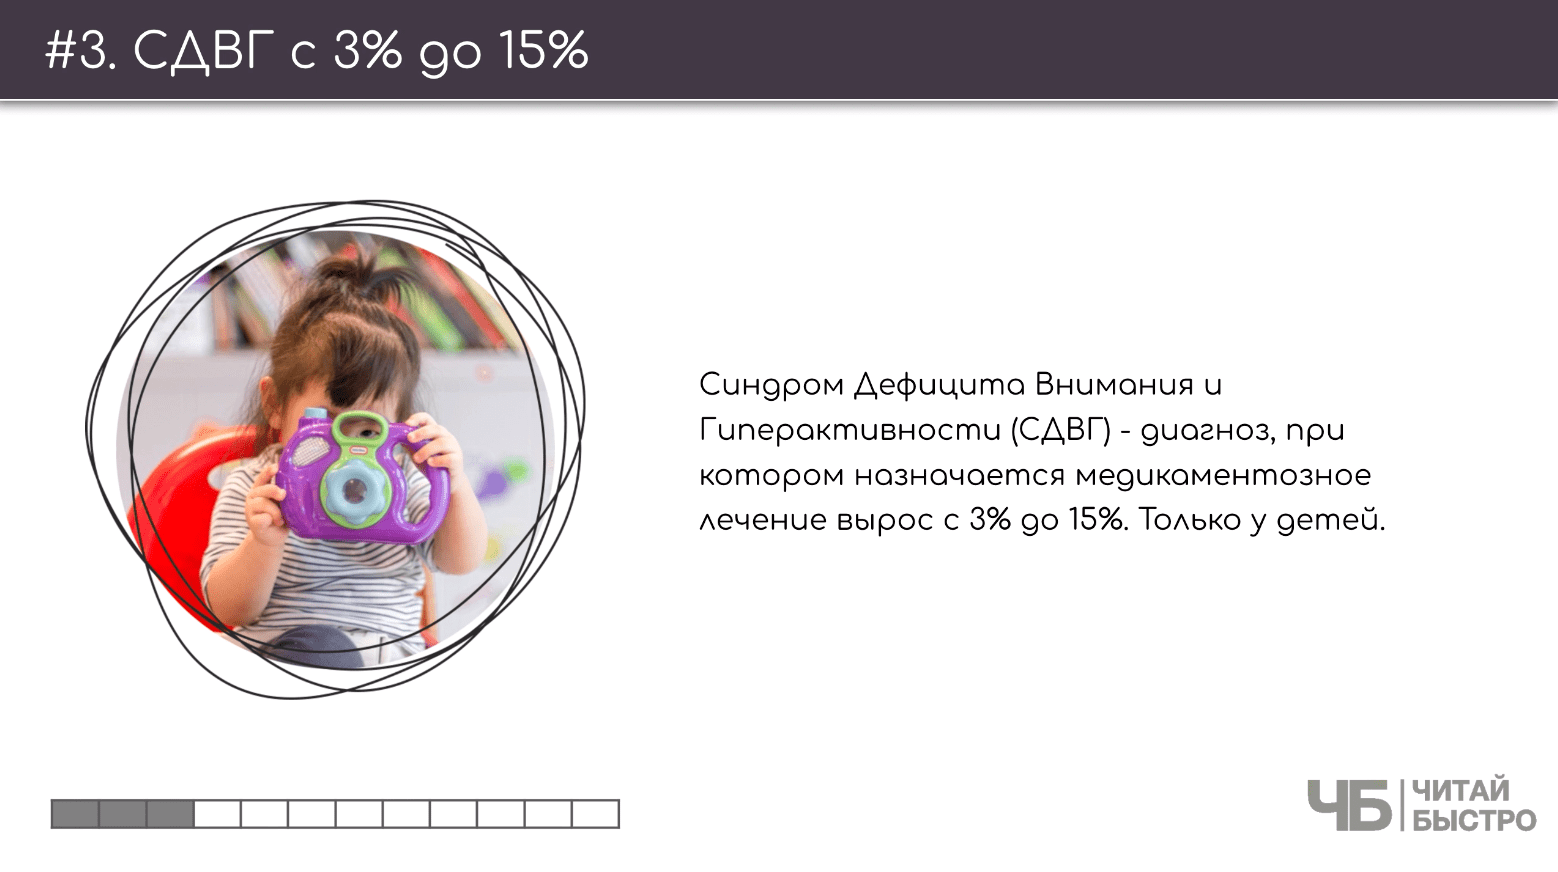 На этом слайде изображен тезис о росте СДВГ с 3% до 15% и иллюстрация ребенка с игрушкой.